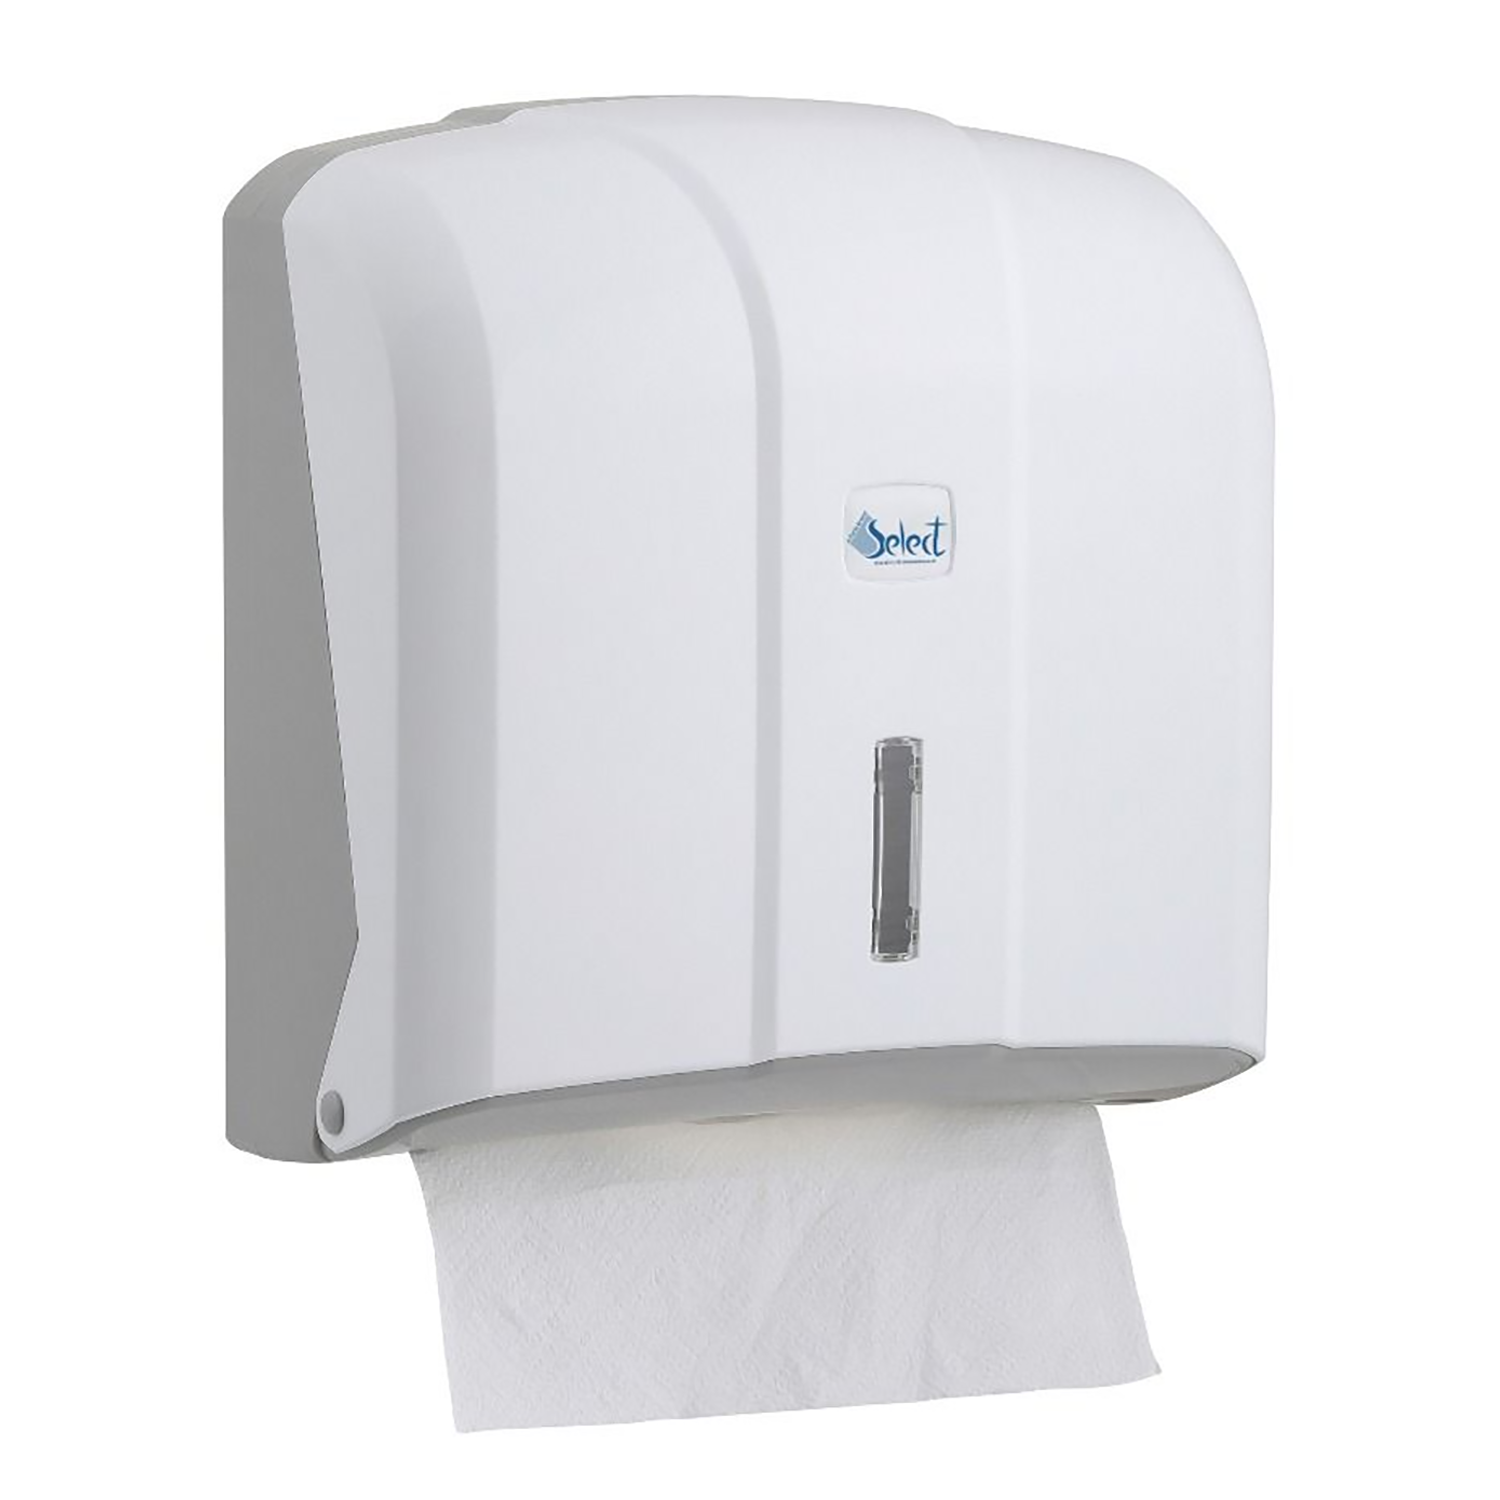 Select Interleaved Folded Toilet Tissue Dispenser | White